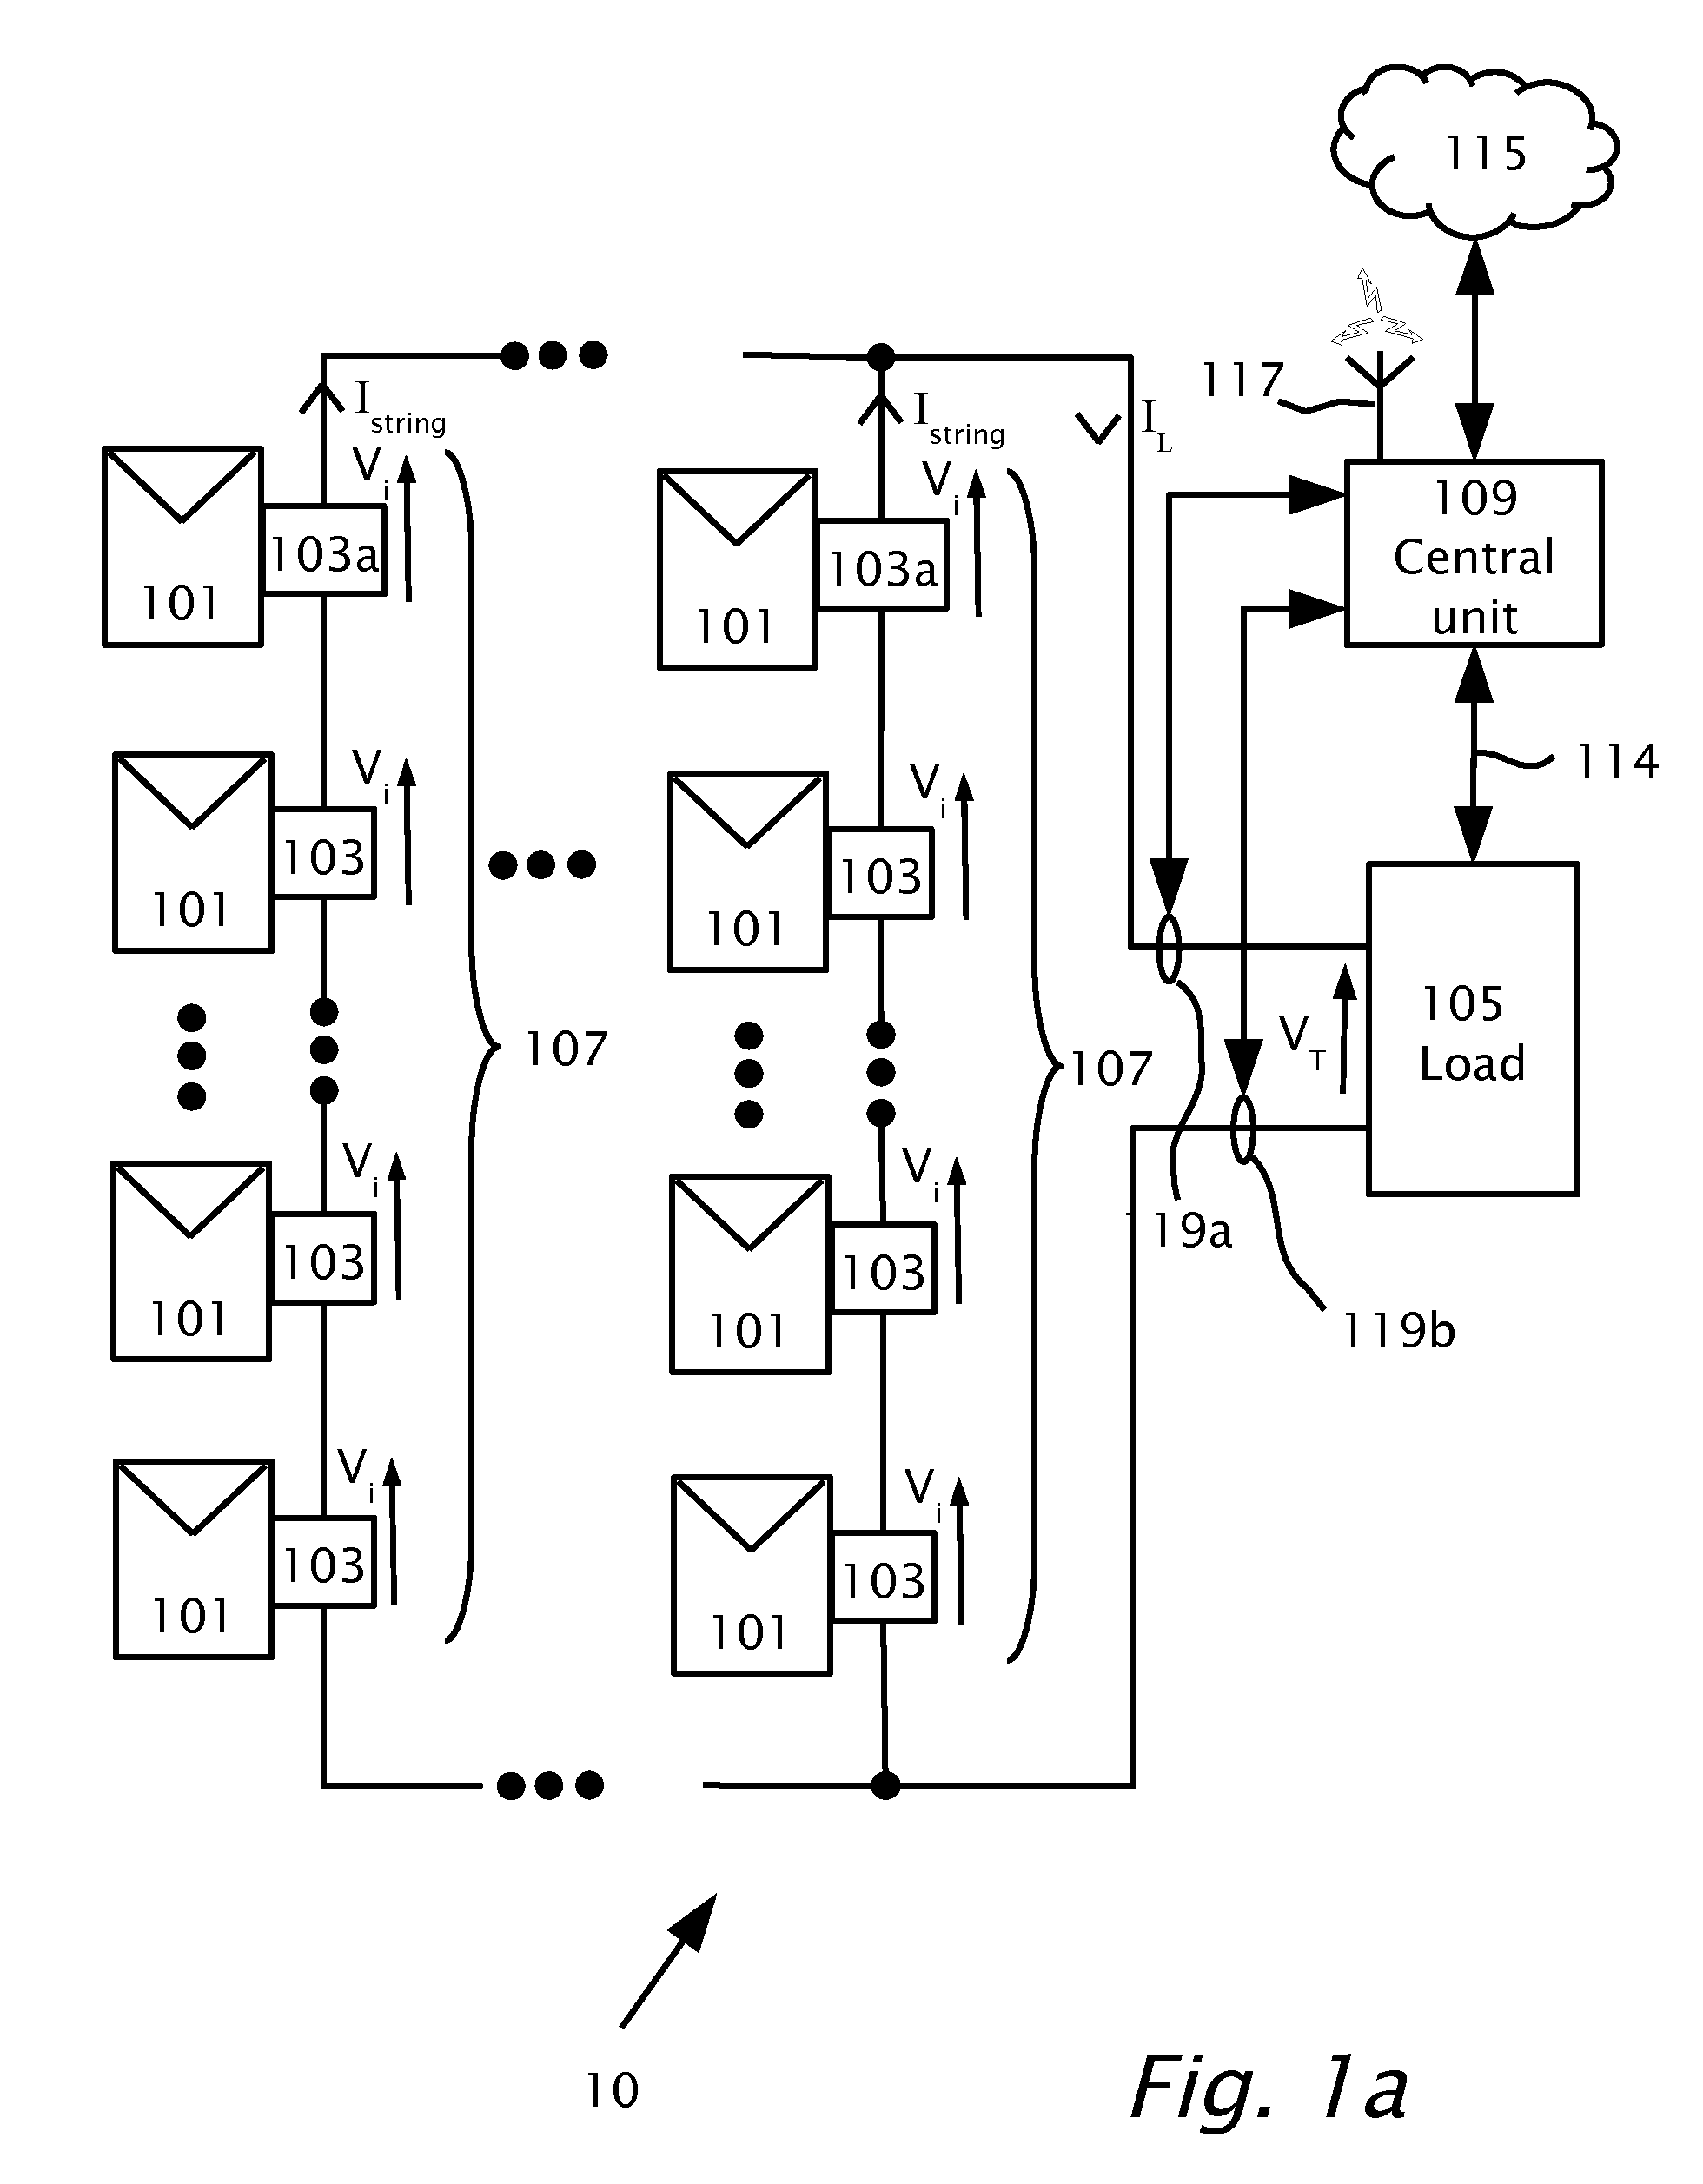 Photovoltaic panel circuitry